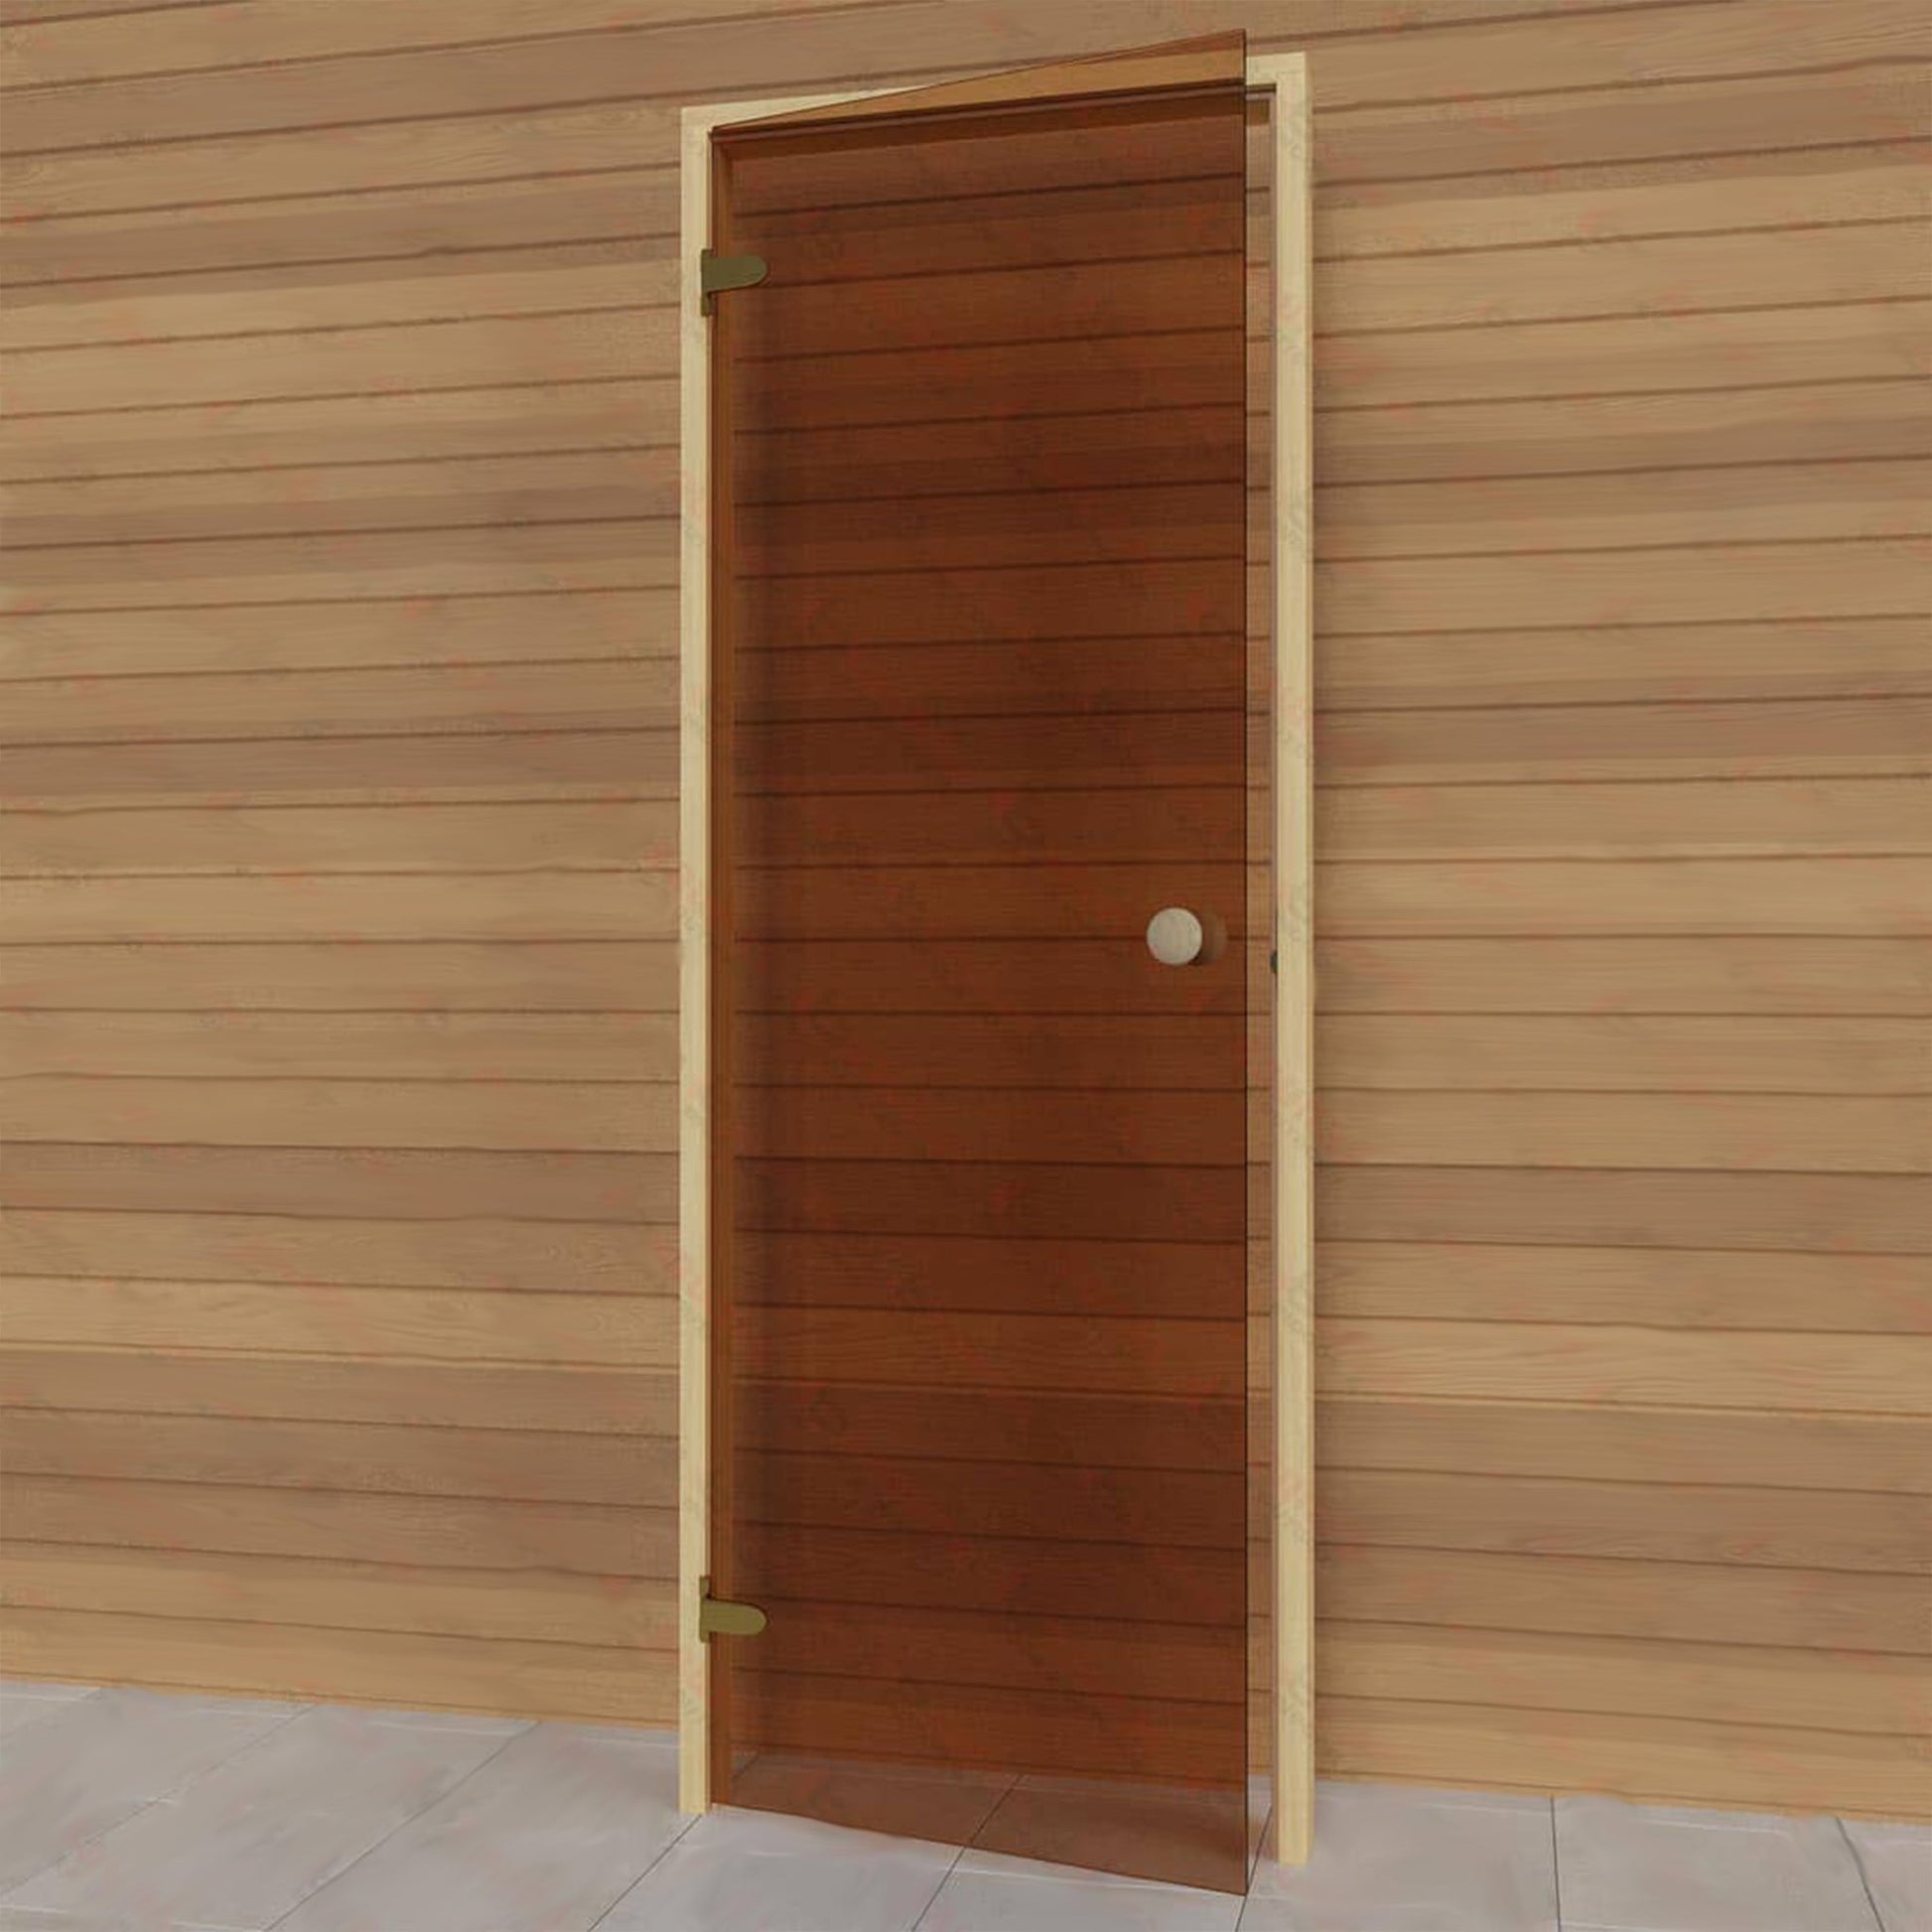 Left side sauna bronze glass door. Elu Saunas and Cold Tubs.